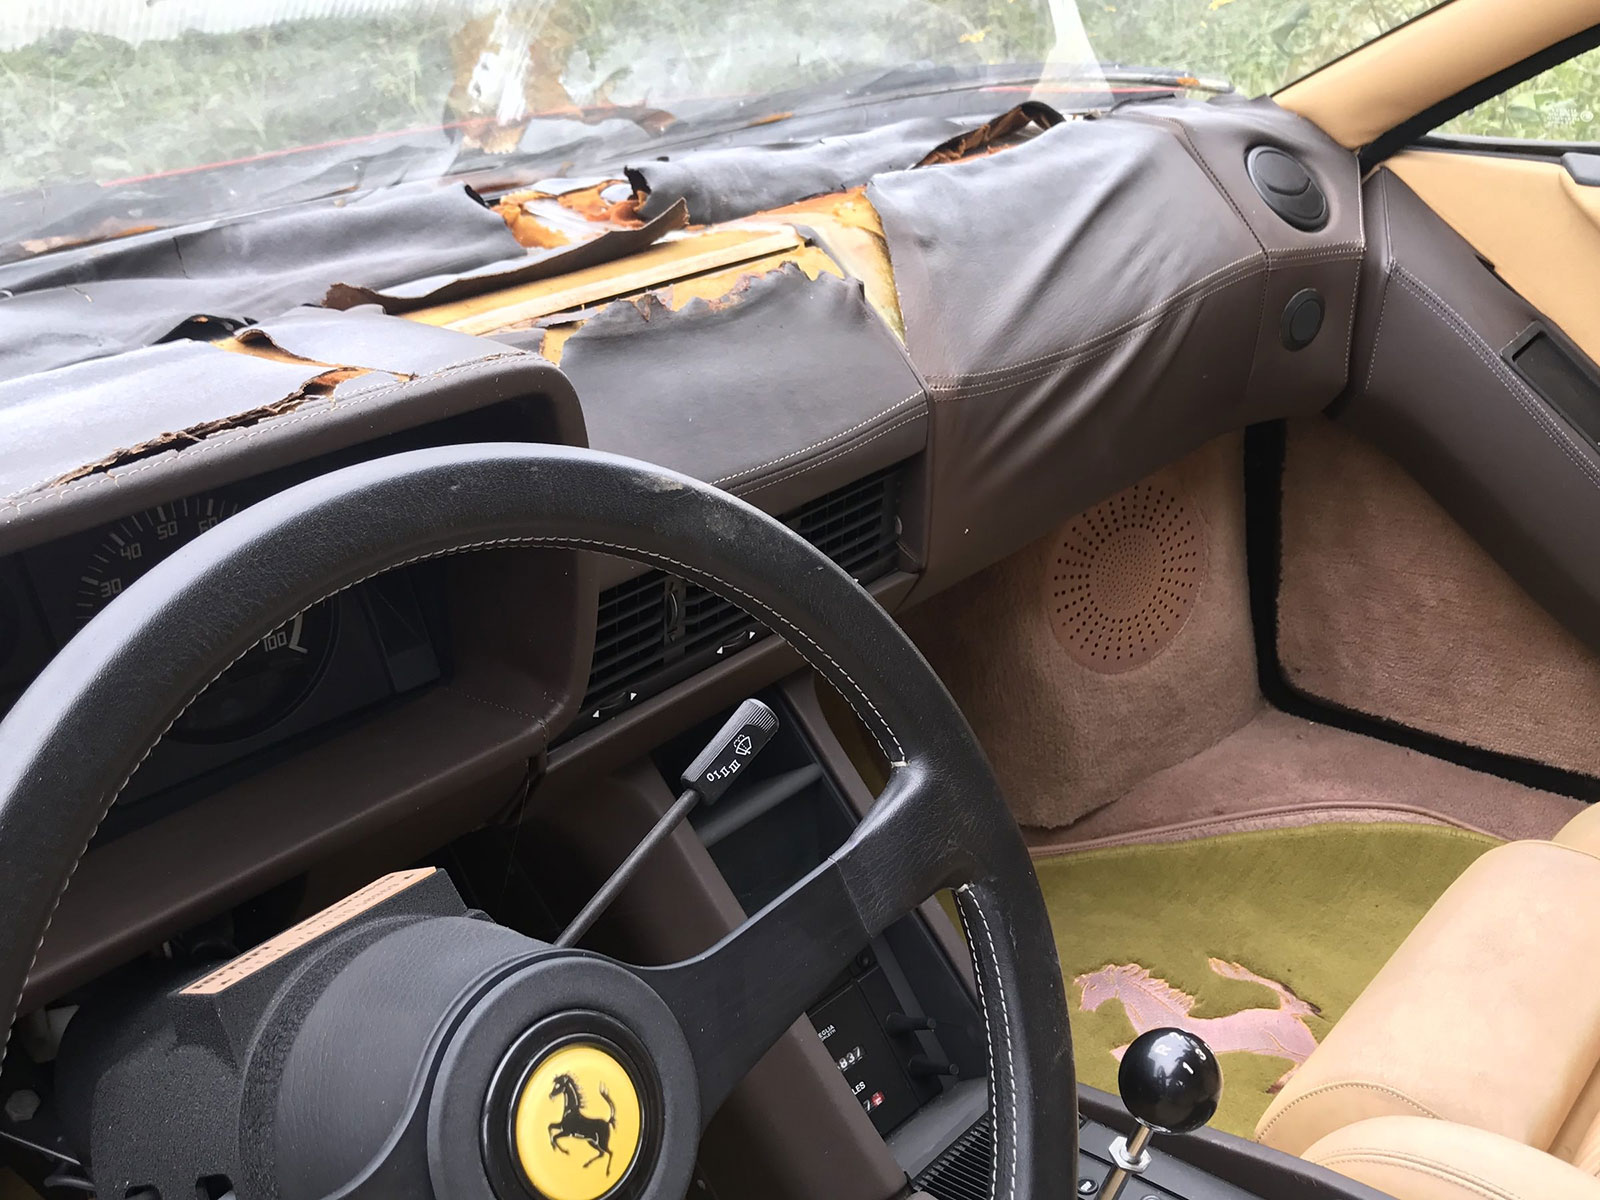 Phát hiện bộ sưu tập siêu xe Ferrari nằm phơi thân suốt 1 thập kỷ tại một bãi cỏ tại Mỹ a14